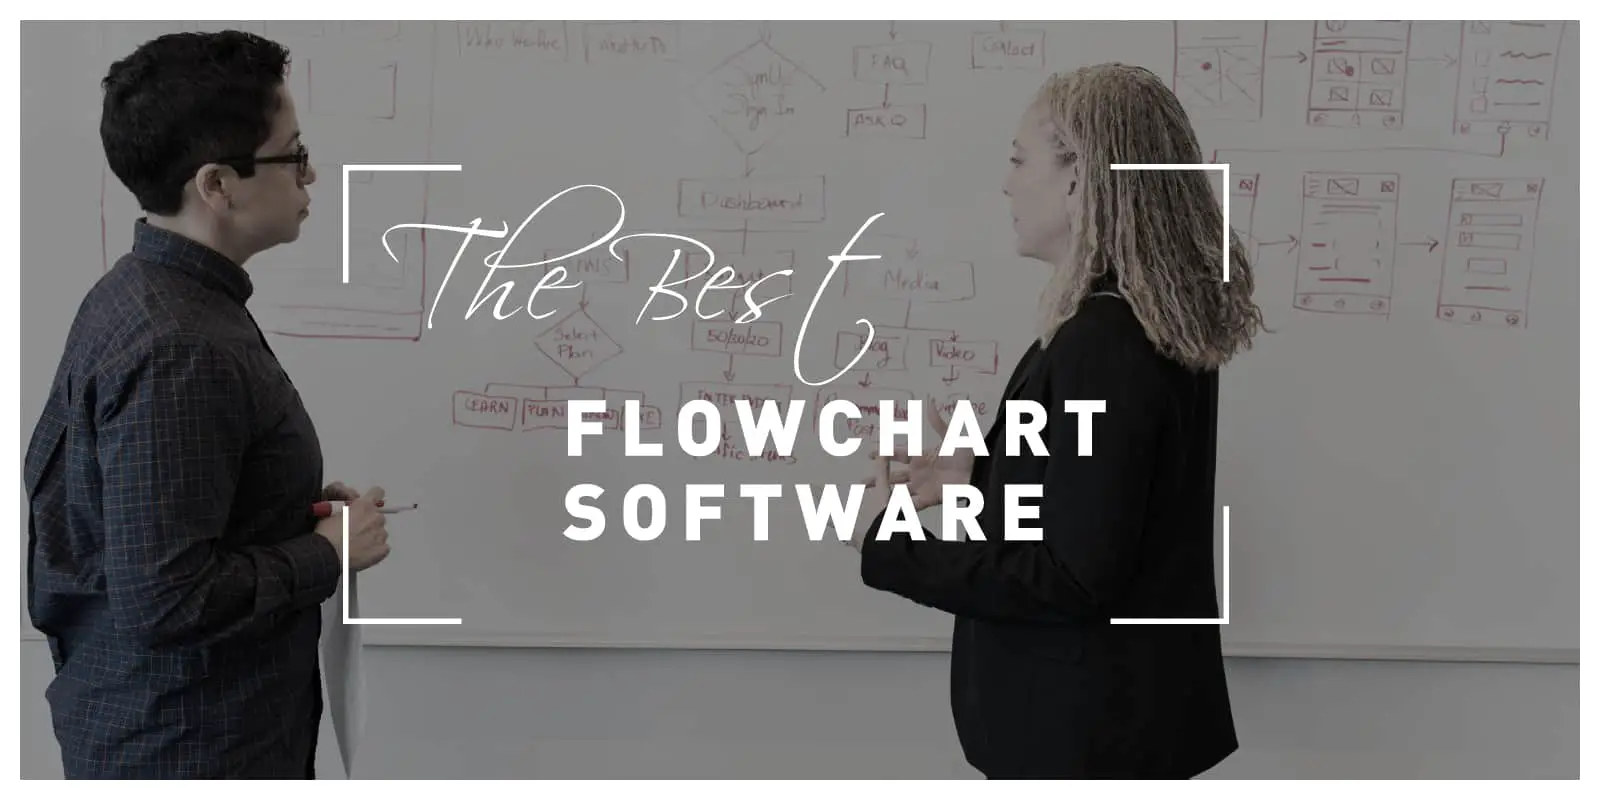 The best flowchart software